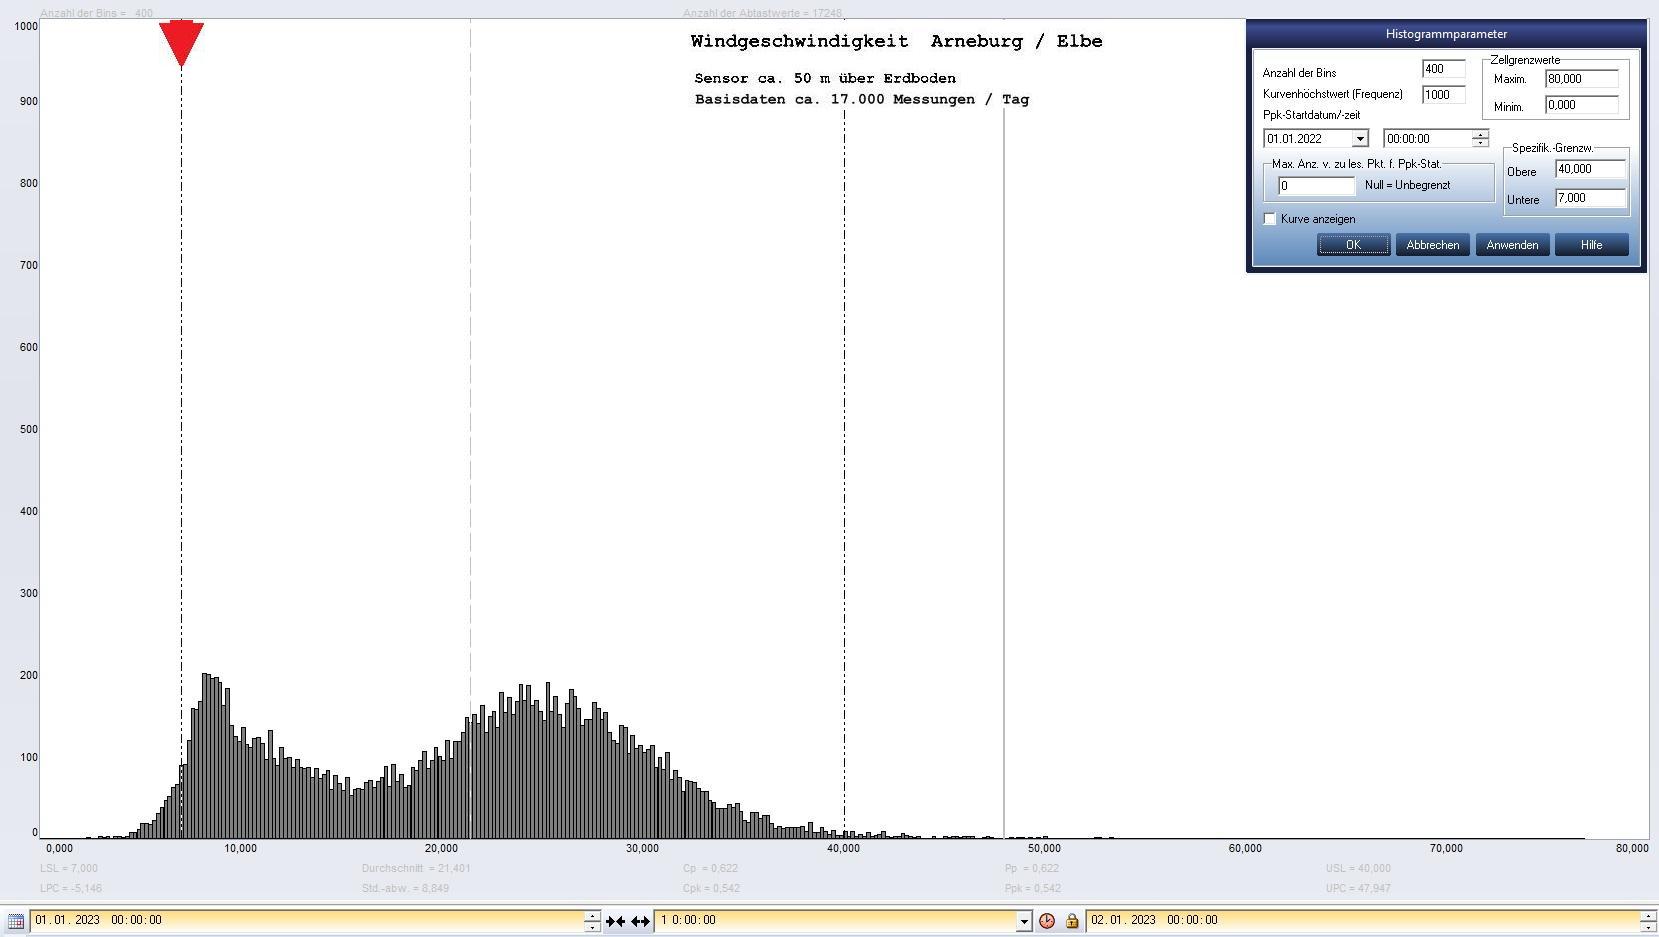 Arneburg Tages-Histogramm Winddaten, 01.01.2023
  Histogramm, Sensor auf Gebäude, ca. 50 m über Erdboden, Basis: 5s-Aufzeichnung